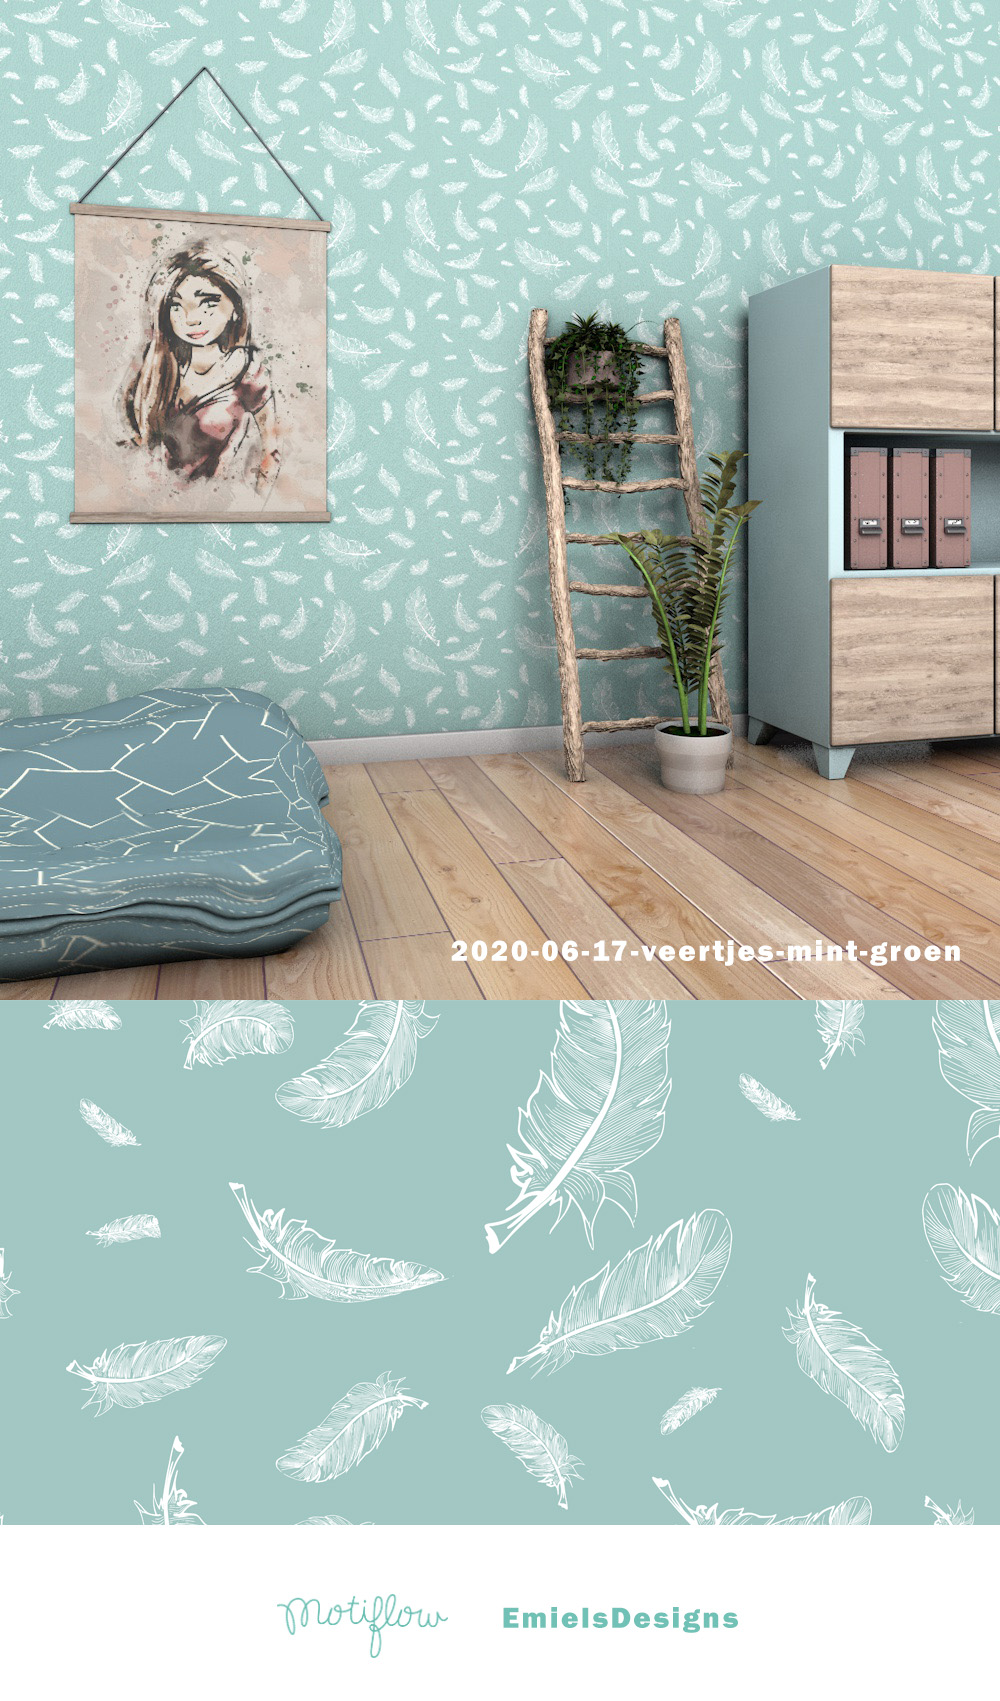 feather-cool-blue-pattern-design-2020-06-17-veertjes-mint-groenjpg